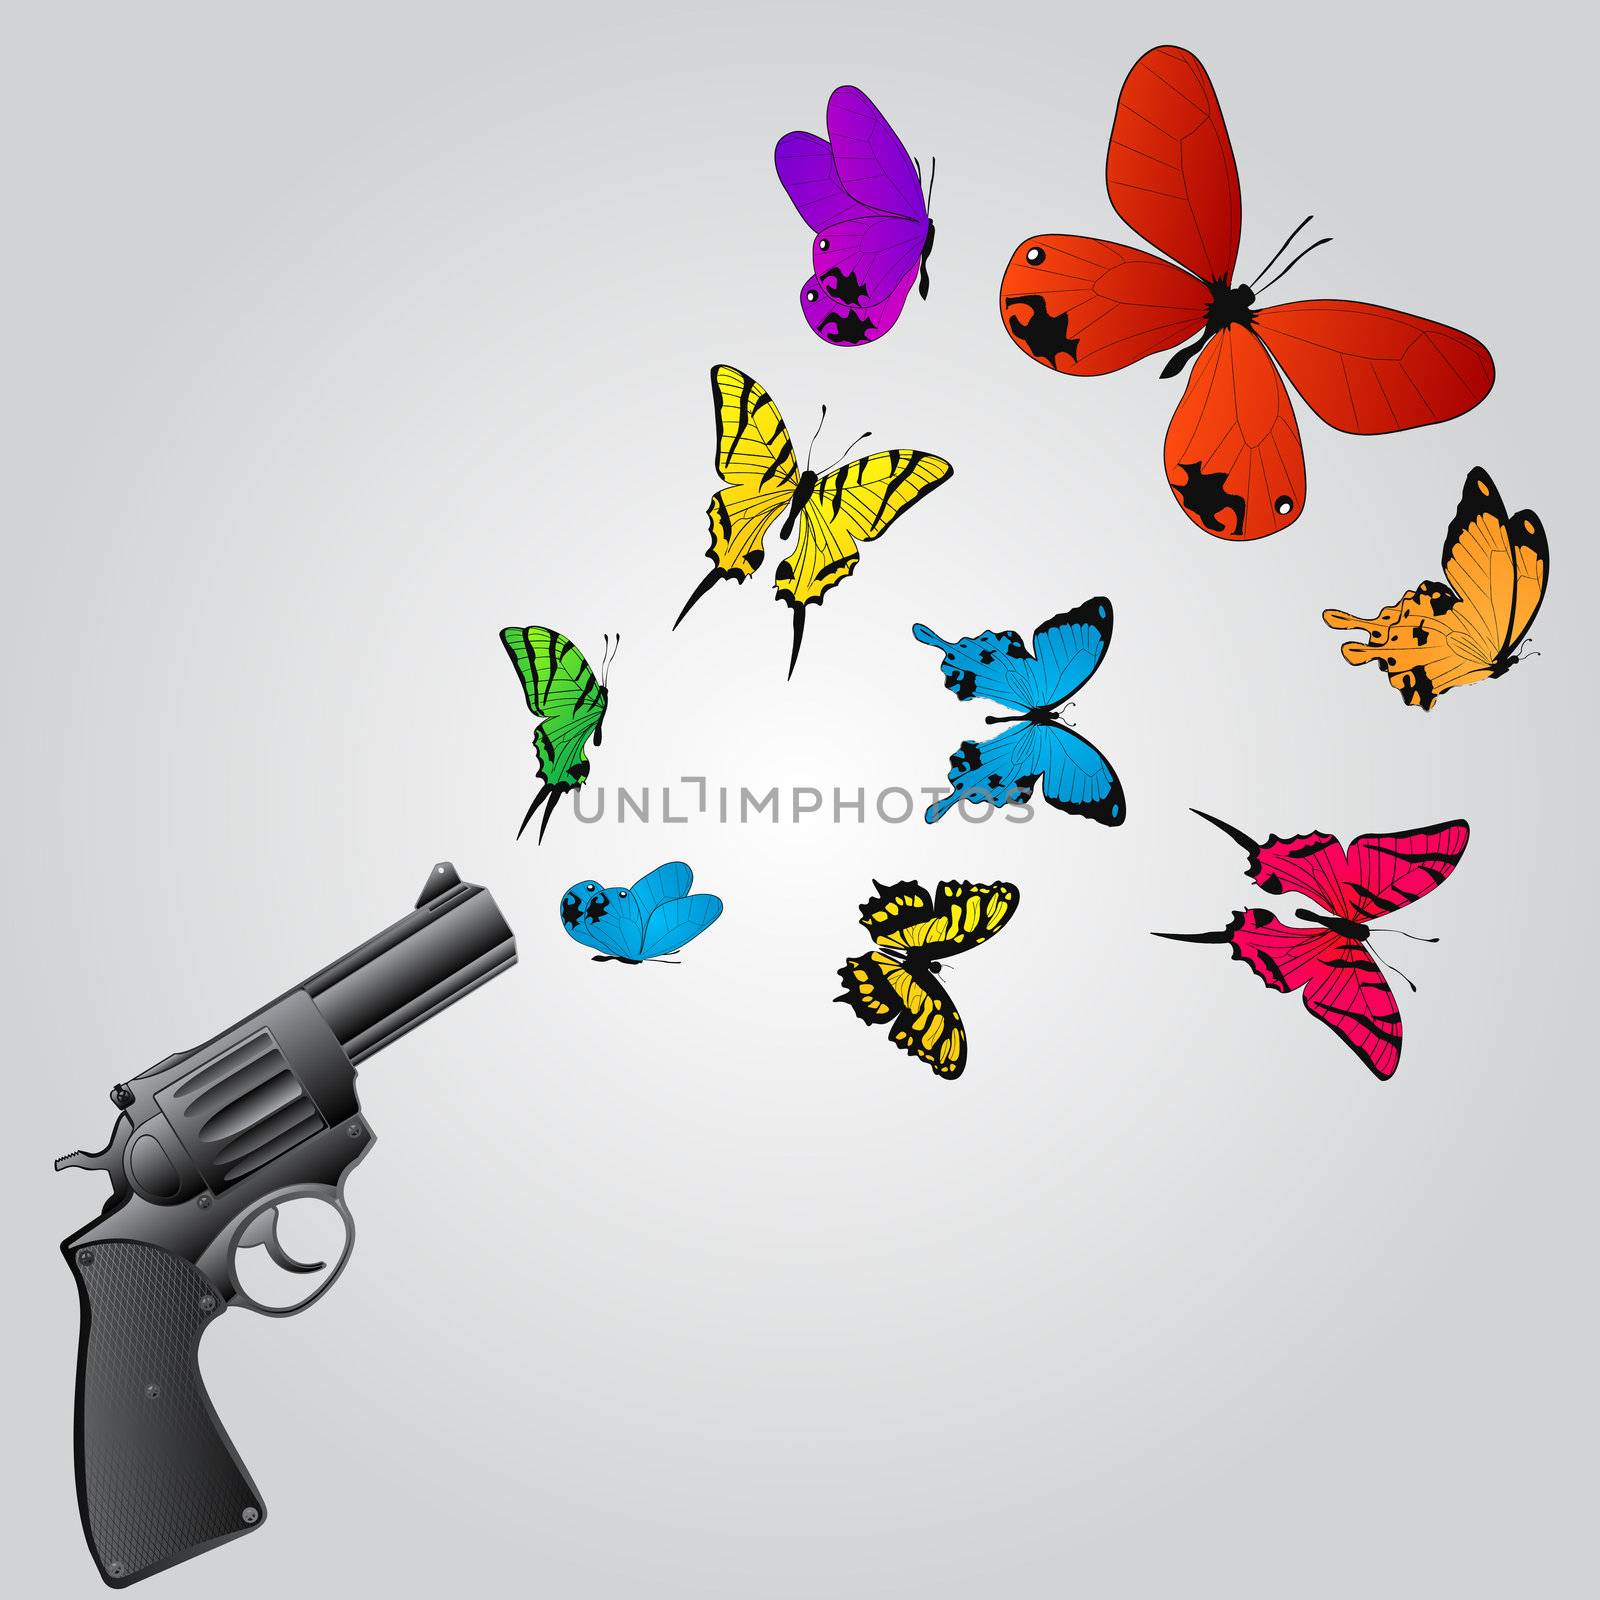 Butterflies and gun by Lirch